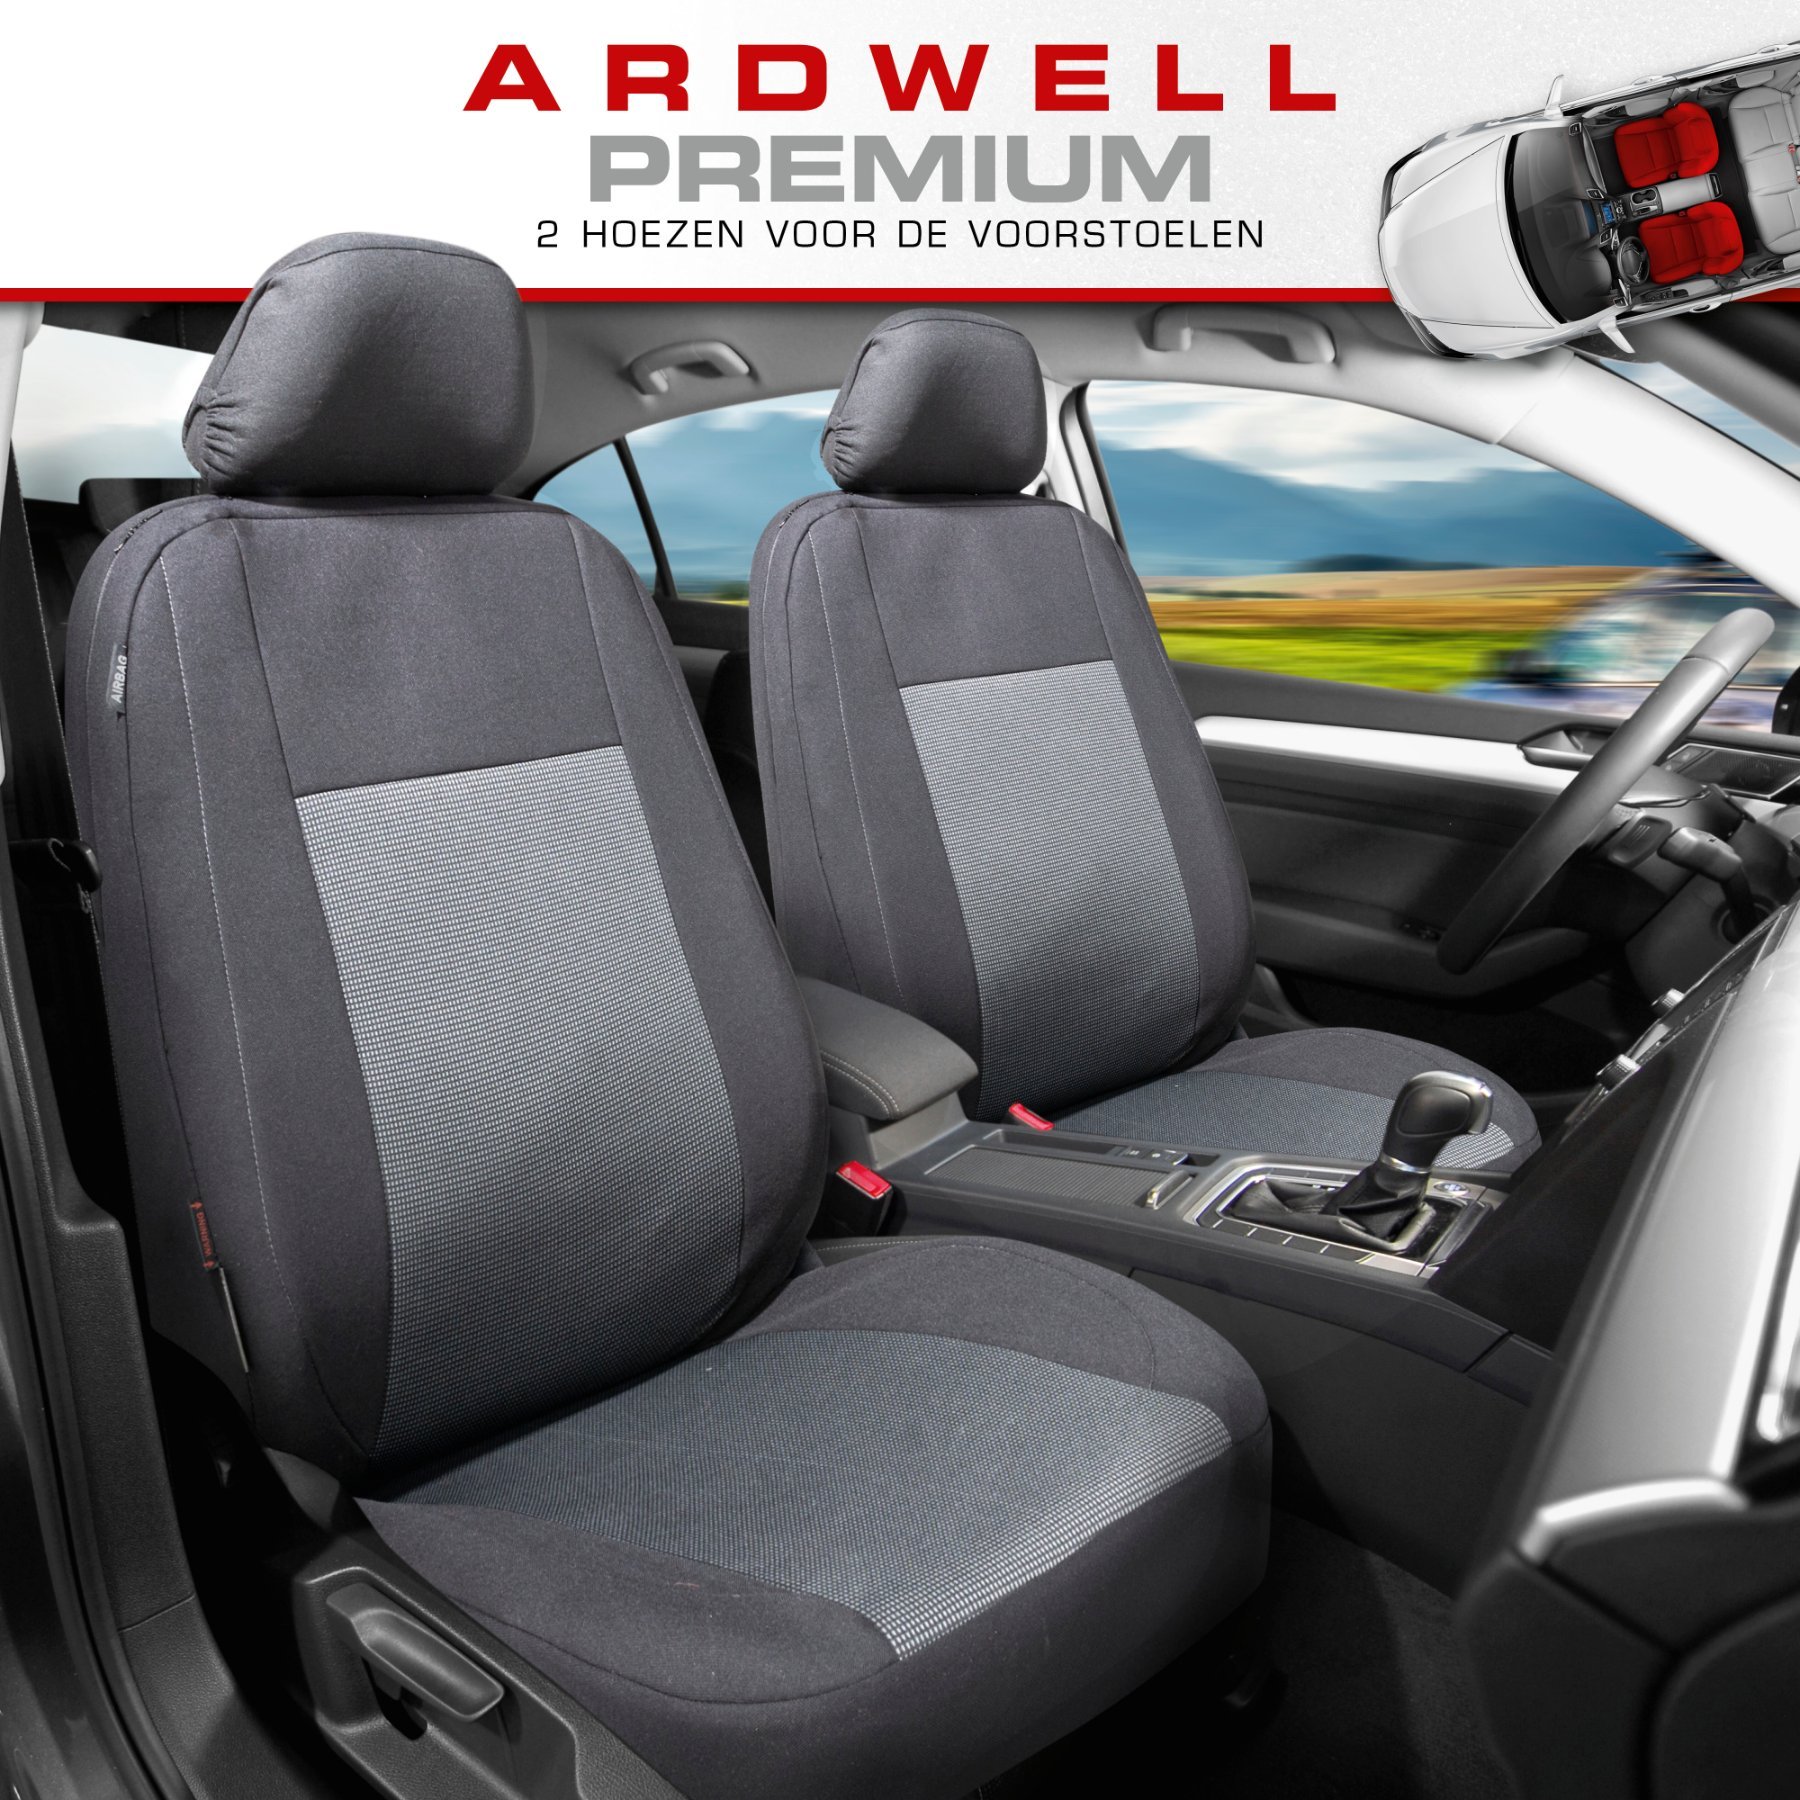 Premium autozetelhoezen Ardwell met rits, ZIPP-IT zetelhoezen, 2 voorzetelhoezen zwart/grijs